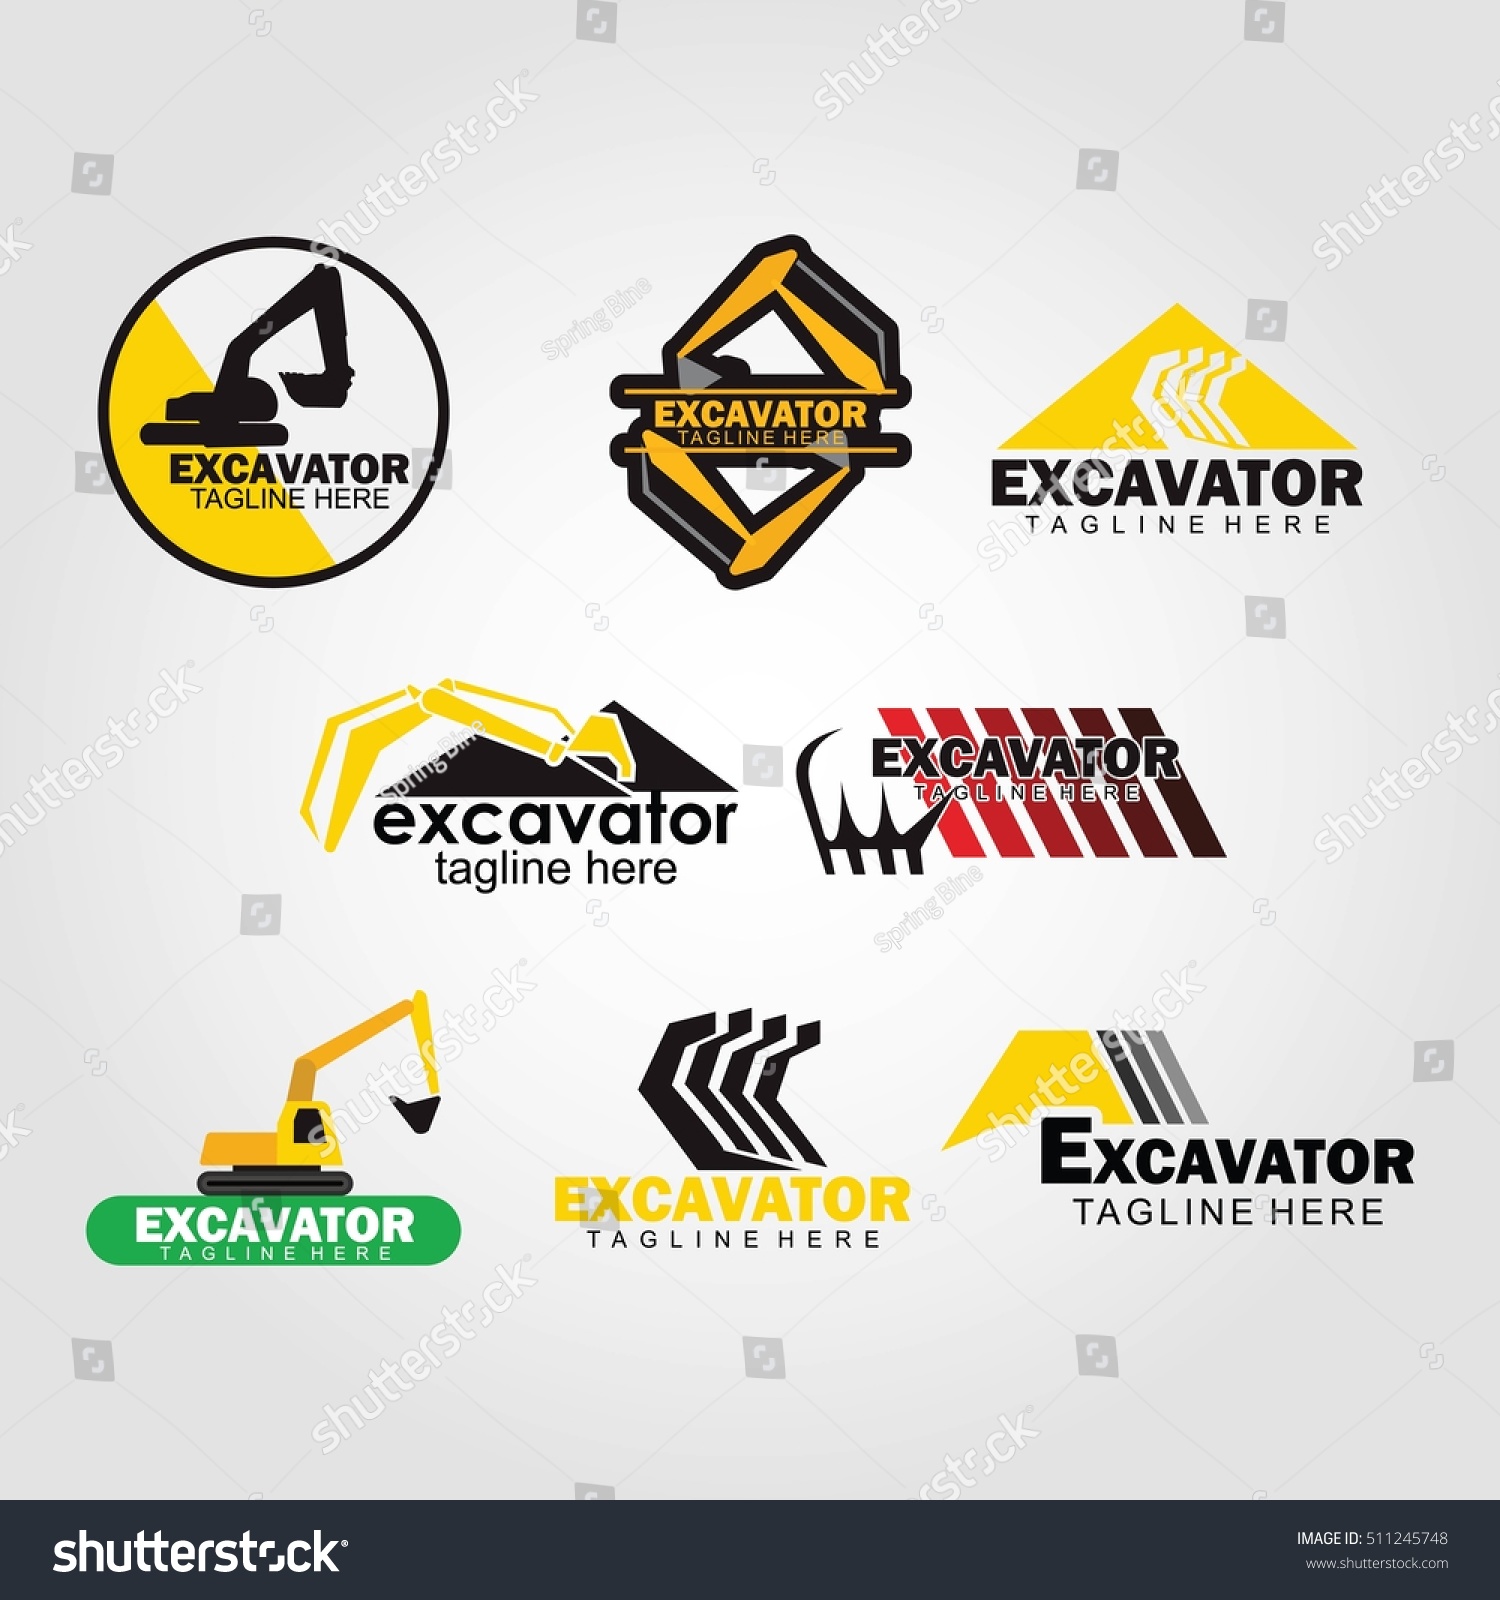 Download Excavator Logo Design Template Vector Illustration Stock Vector 511245748 - Shutterstock